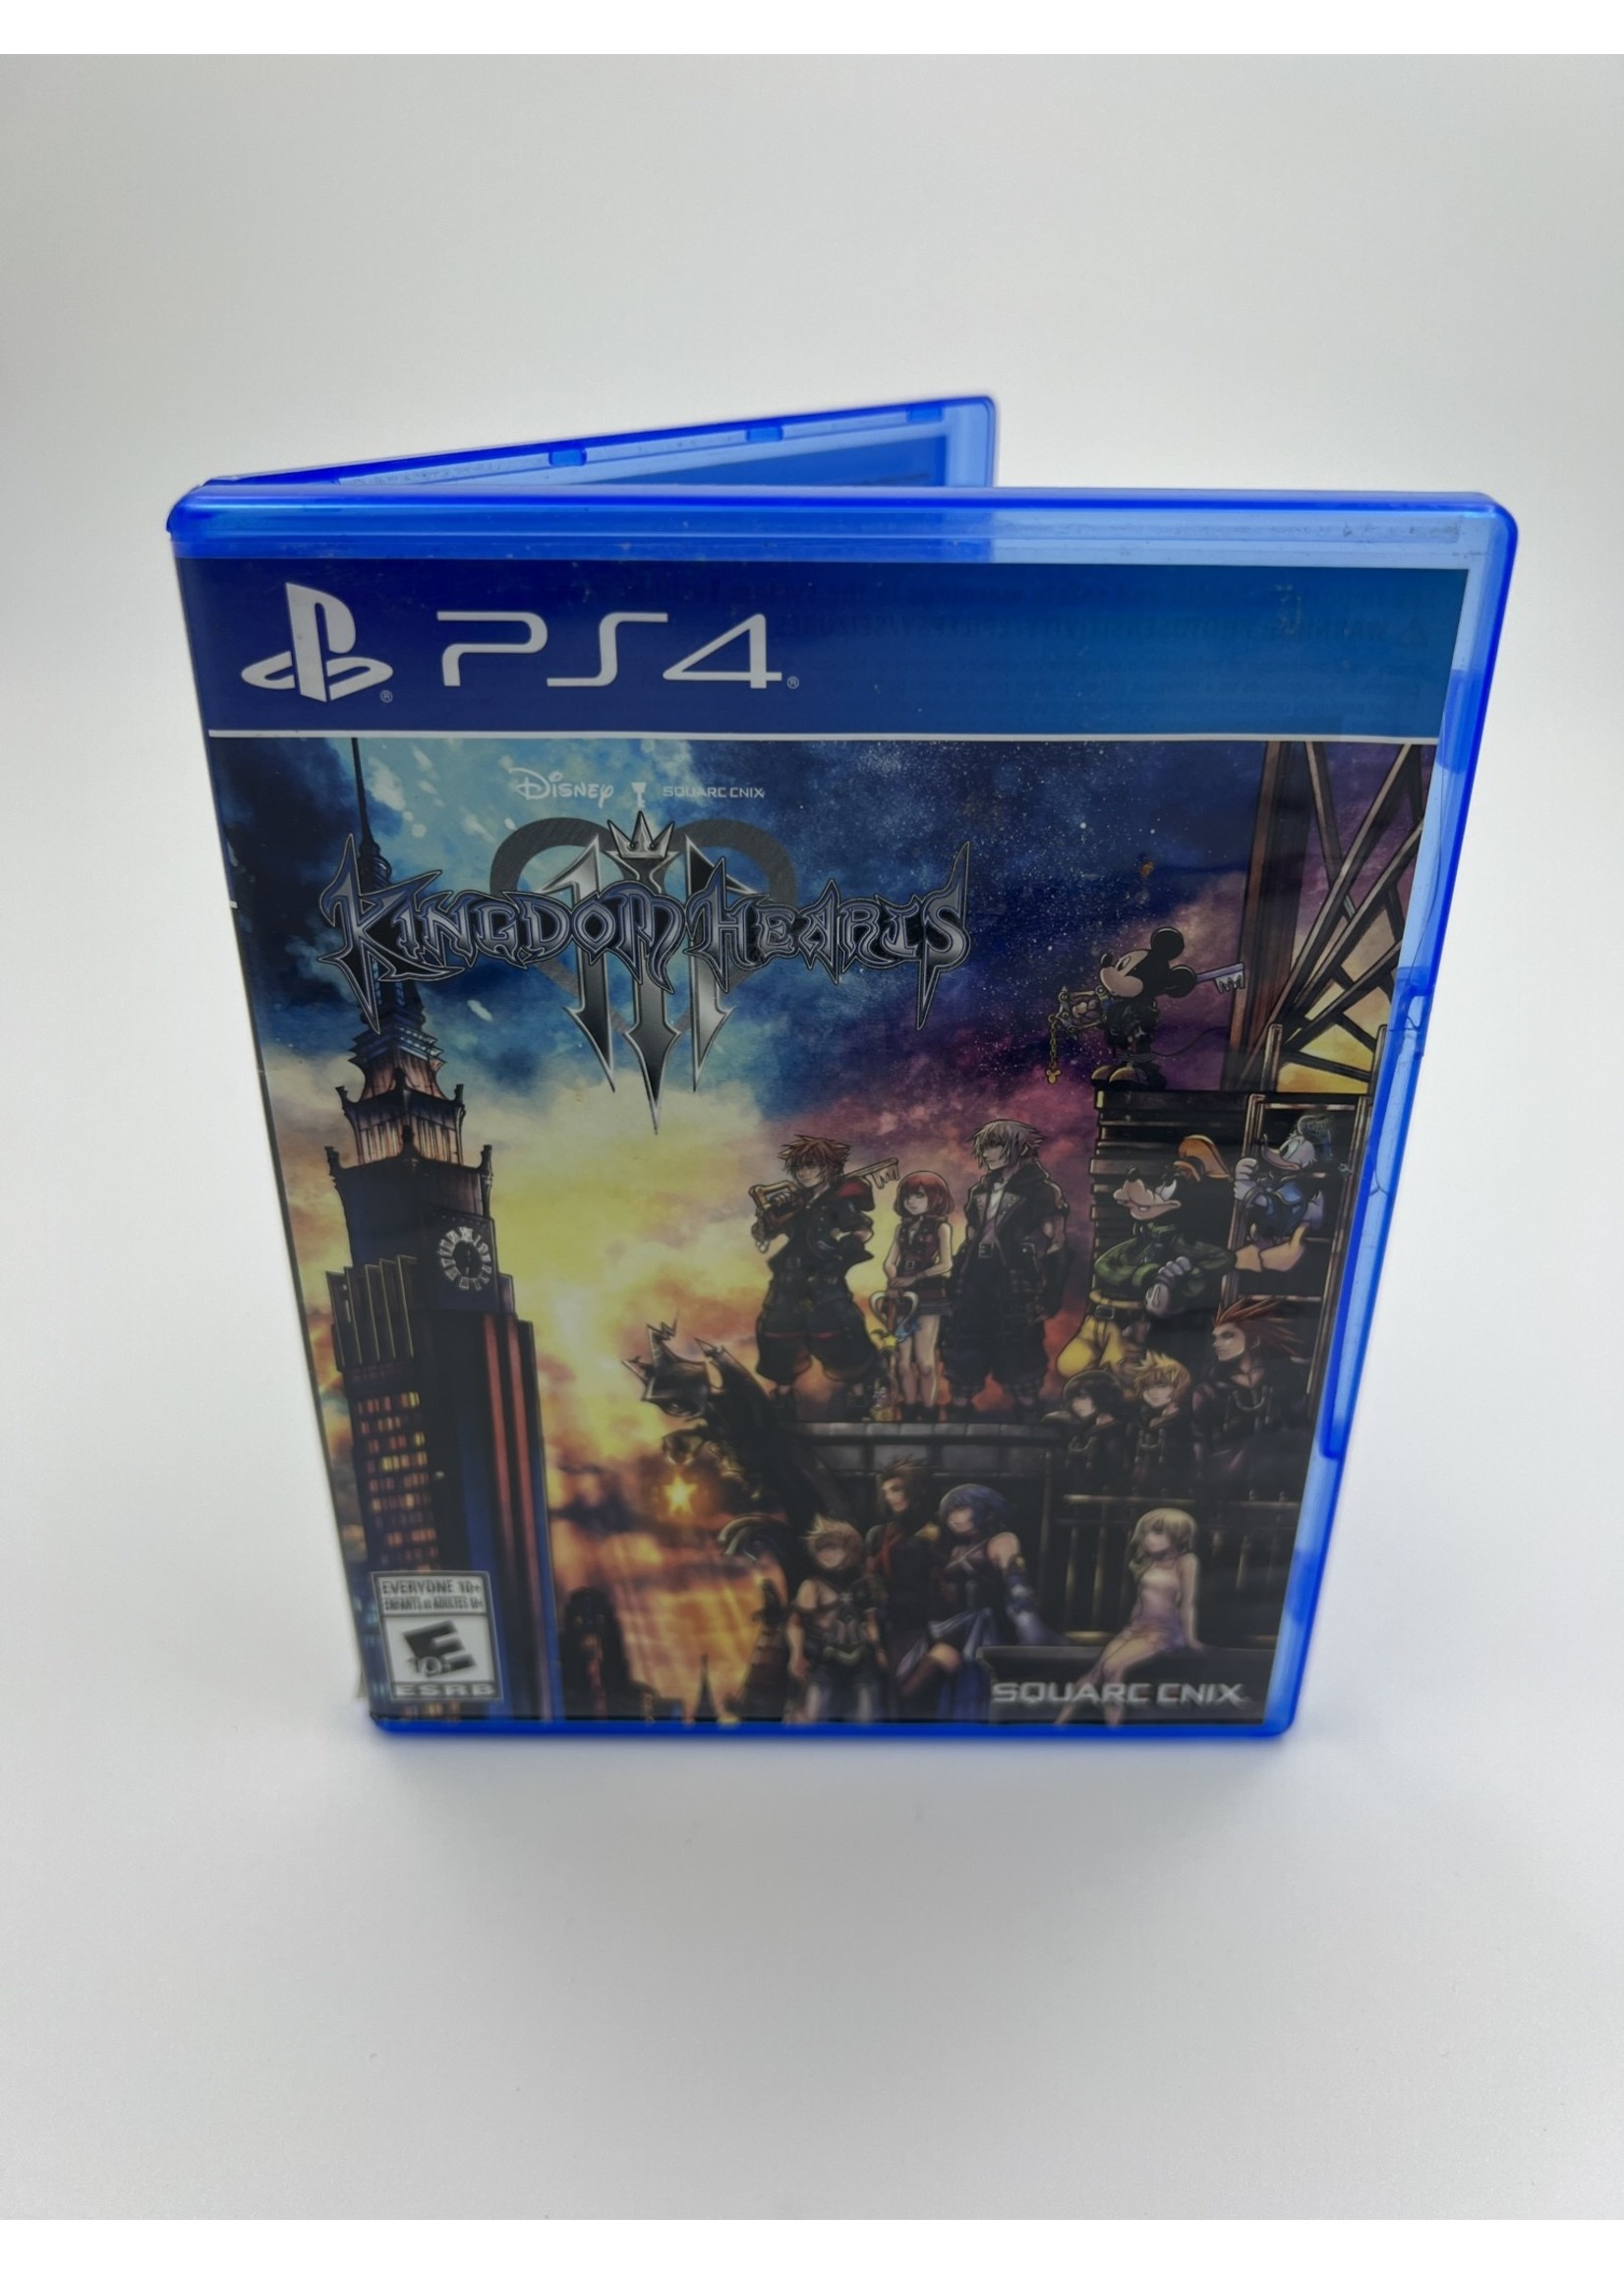 Sony Disney Kingdom Hearts 3 Ps4